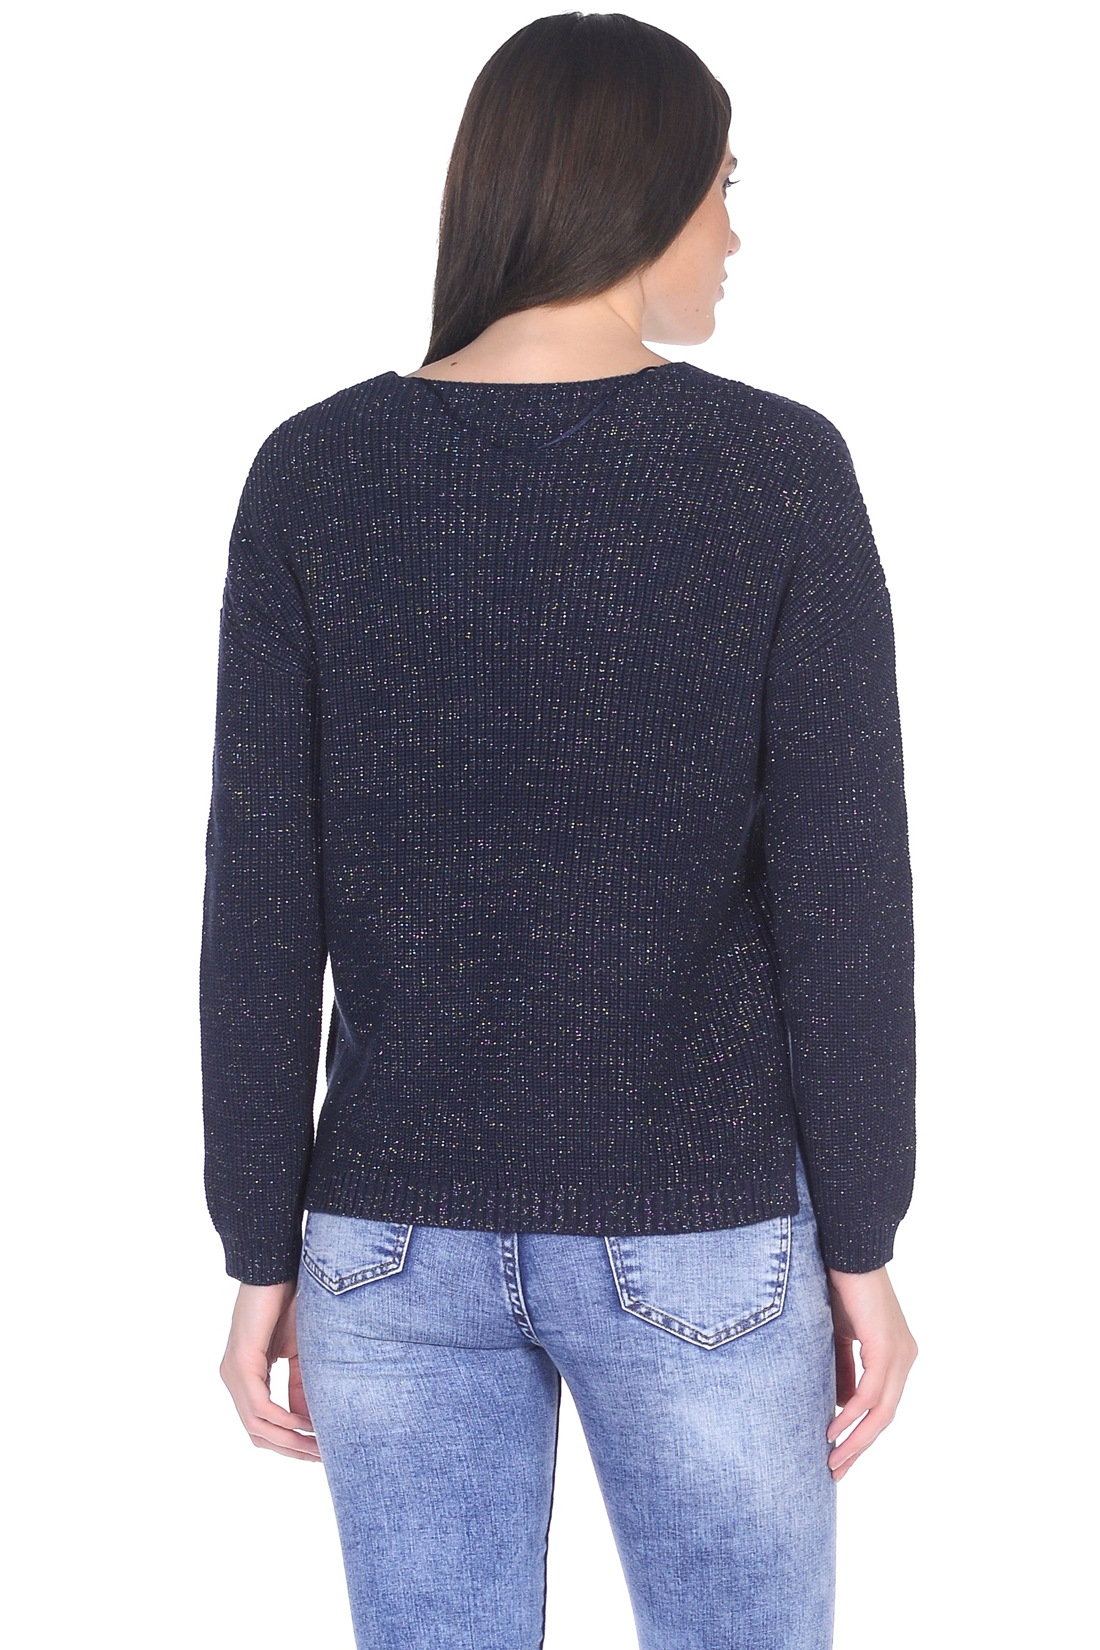 Пуловер с блестящей нитью (арт. baon B139017), размер XS, цвет синий Пуловер с блестящей нитью (арт. baon B139017) - фото 2